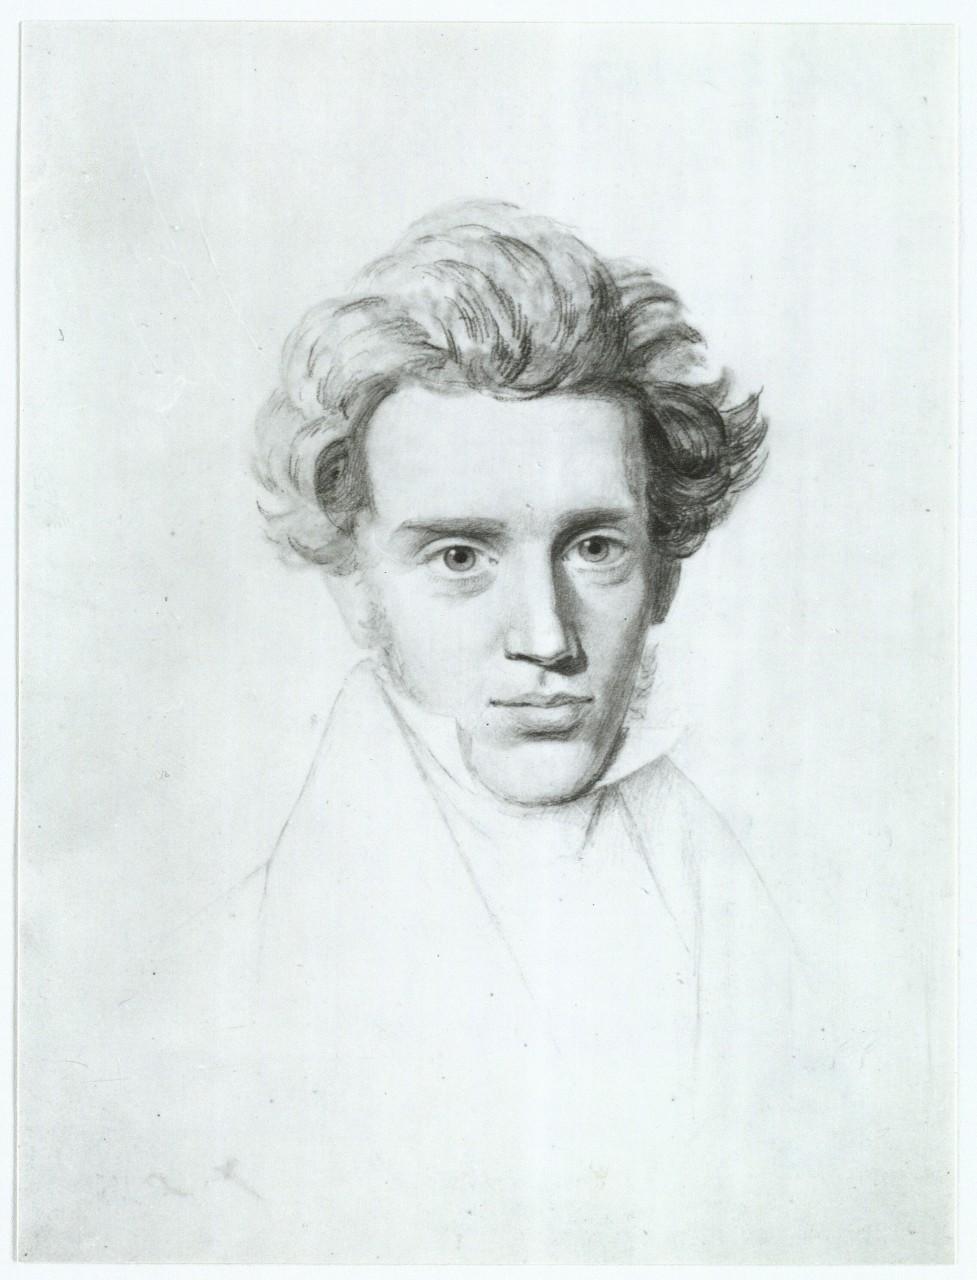 En ung og nok noget idealiseret Søren Kierkegaard tegnet af fætteren Niels Christian Kierkegaard (1806-1882), som var en velkendt tegner og litograf (Det Kgl. Bibliotek).